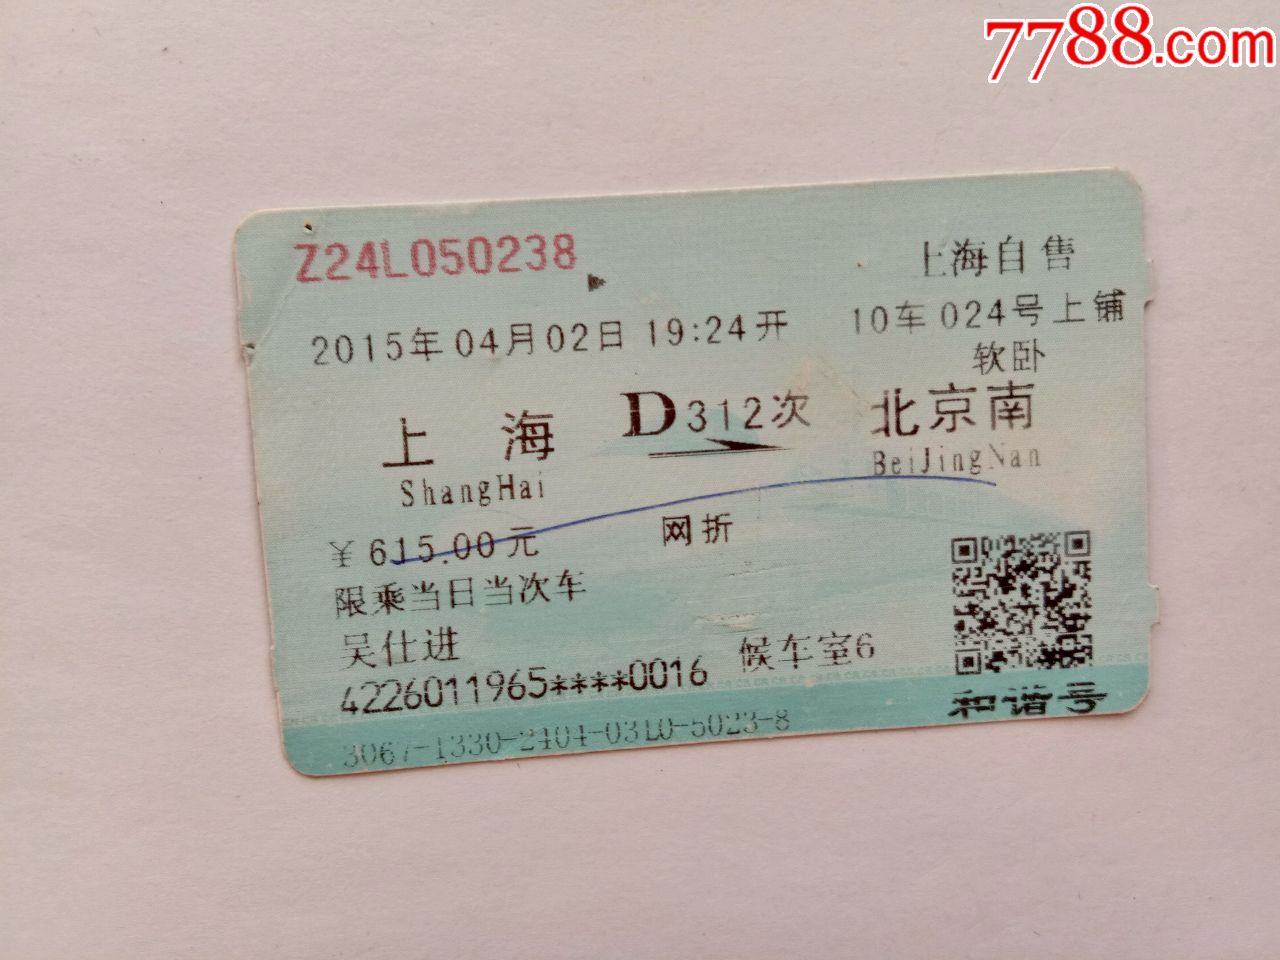 上海-D312次-北京南